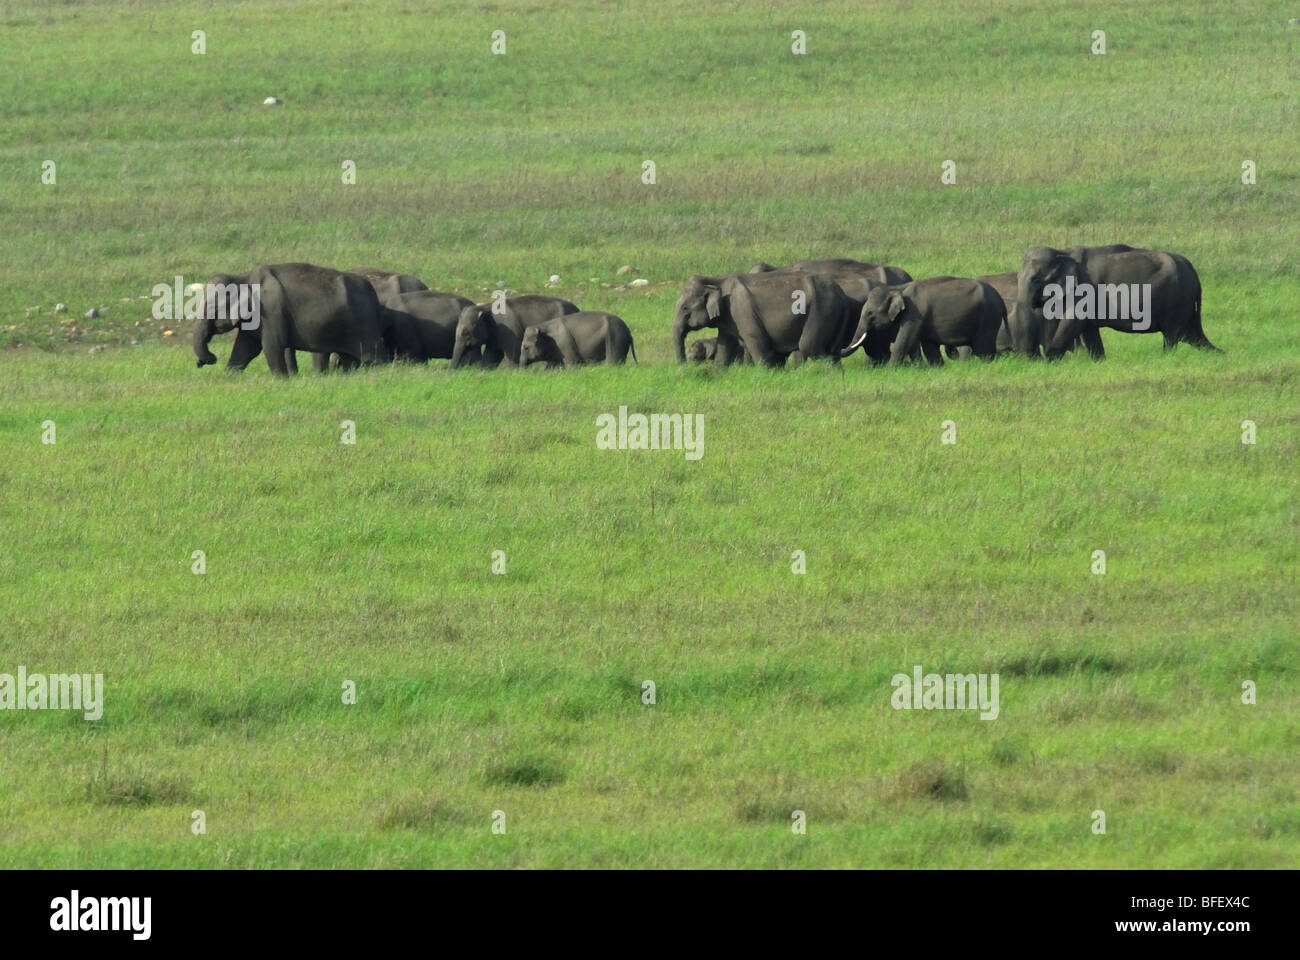 Asiatische Elefanten im Grünland Stockfoto